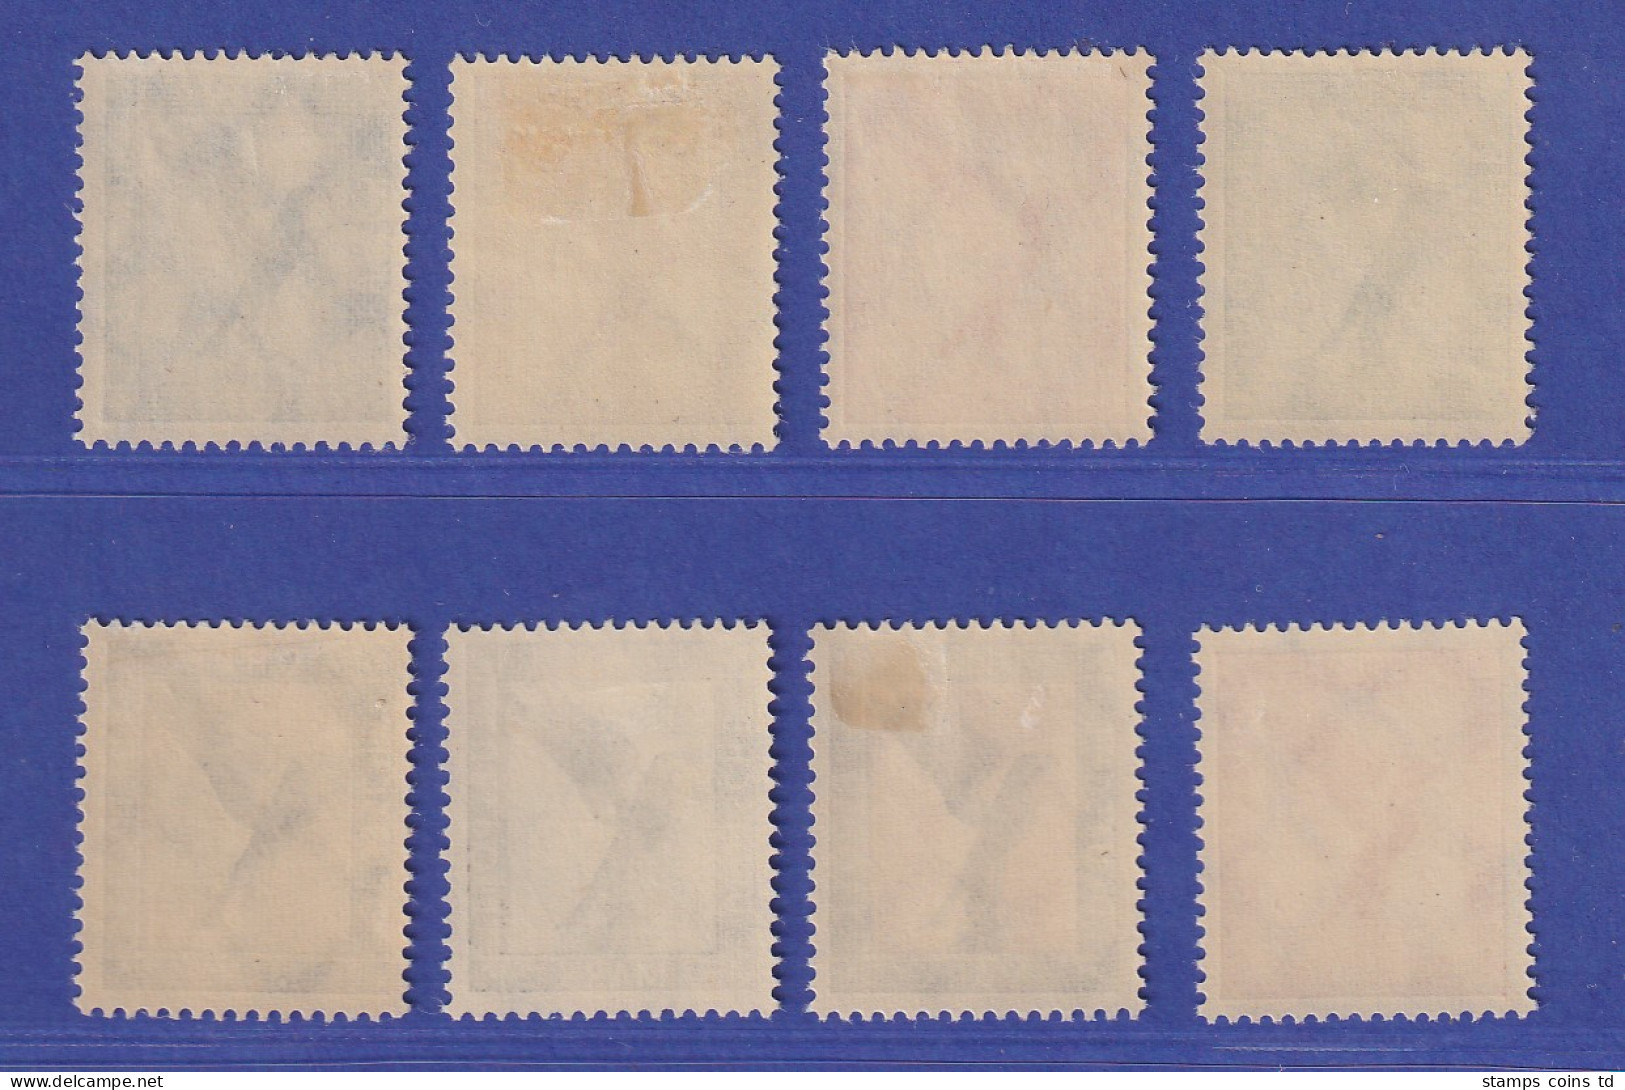 Dt. Reich 1926 Flugpostmarken Adler Mi.-Nr. 378-384 Ungebraucht * - Unused Stamps